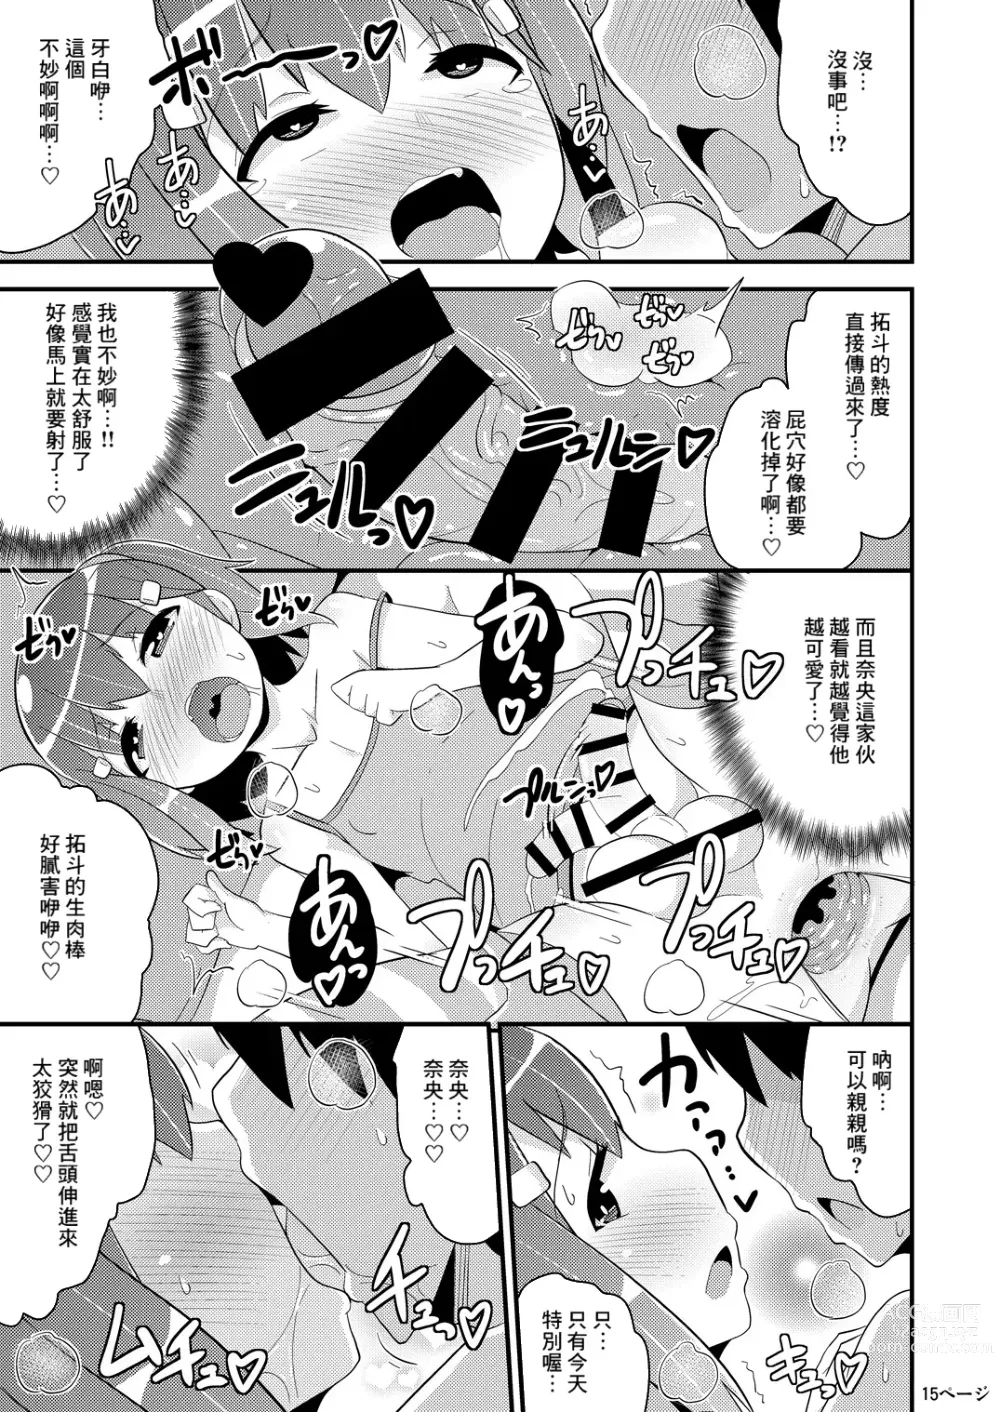 Page 14 of doujinshi Muchi Homo Kanojo